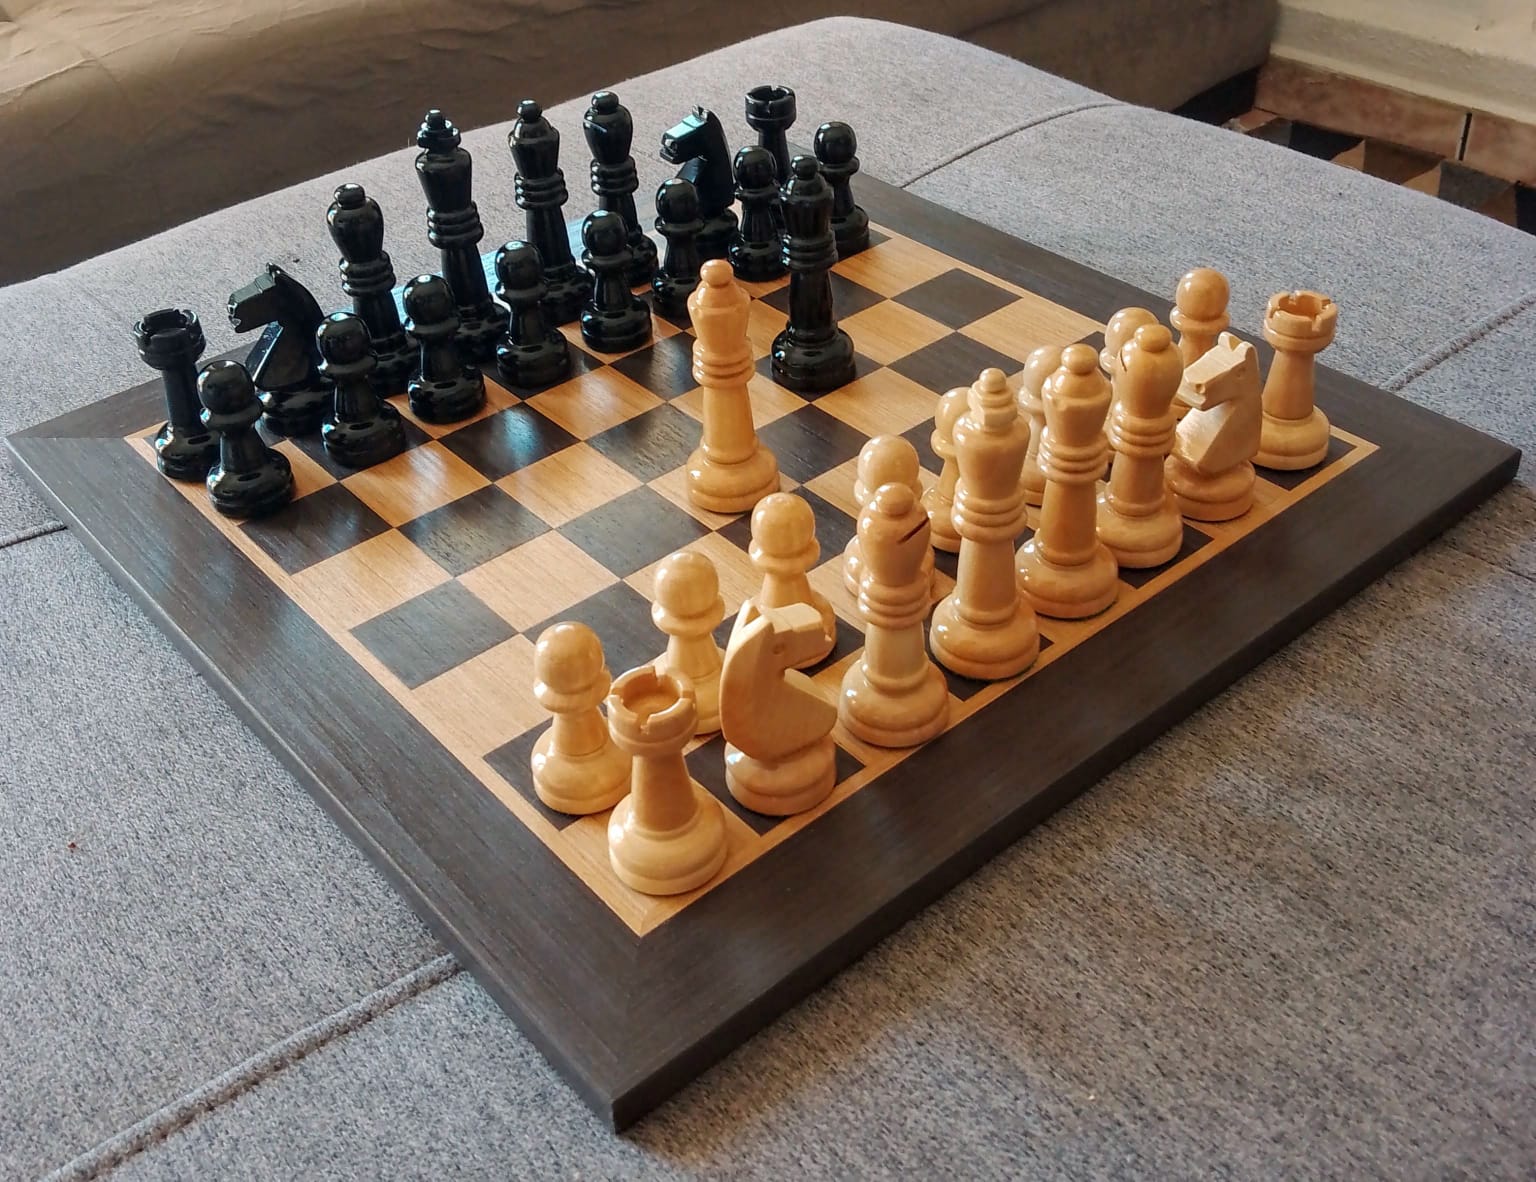 Tabuleiro de xadrez madeira macica